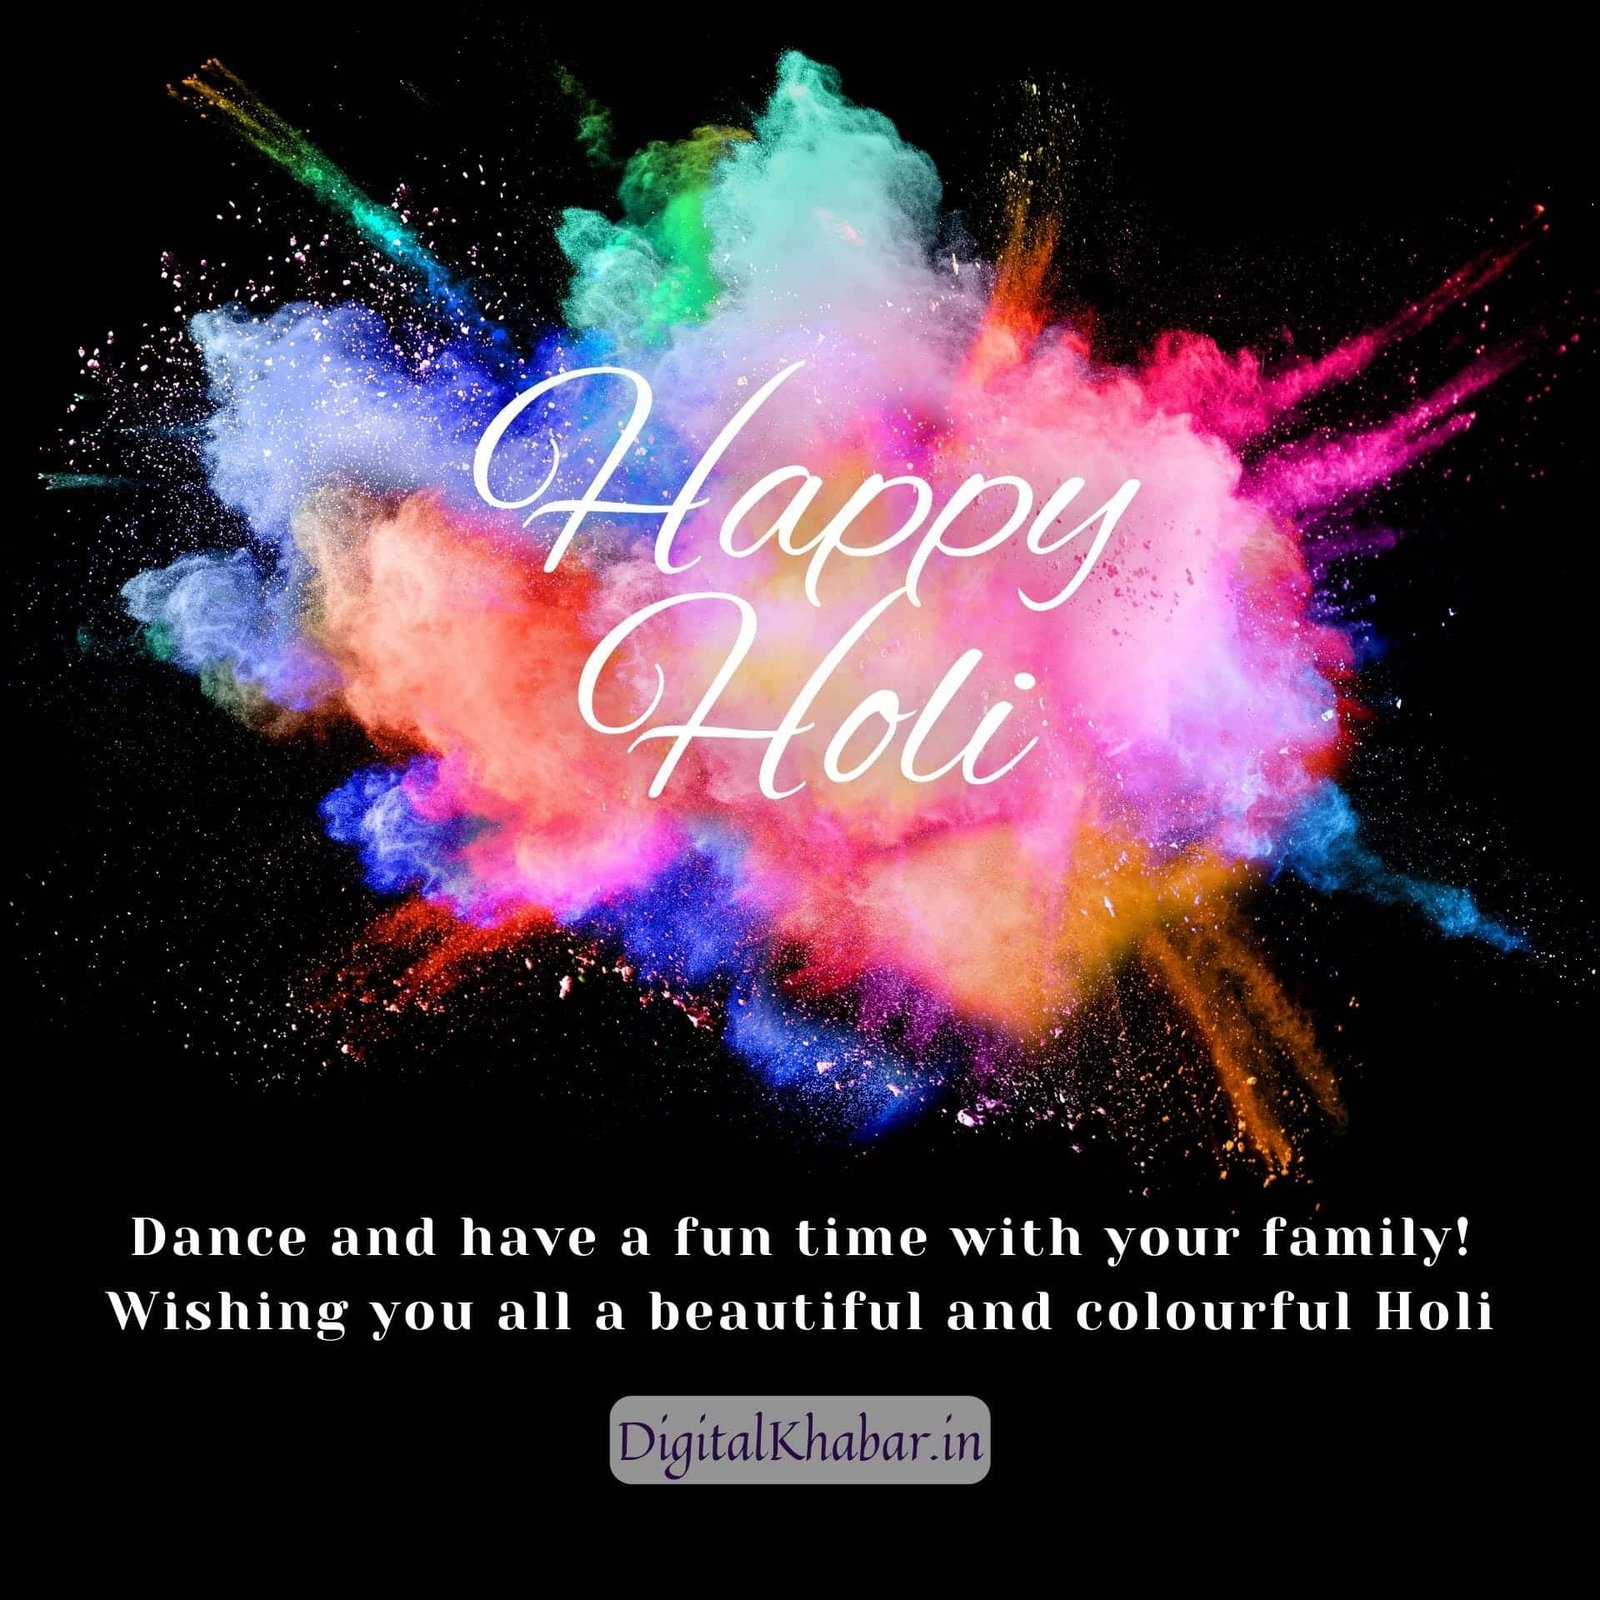 Happy Holi Wishes with Images, best holi image